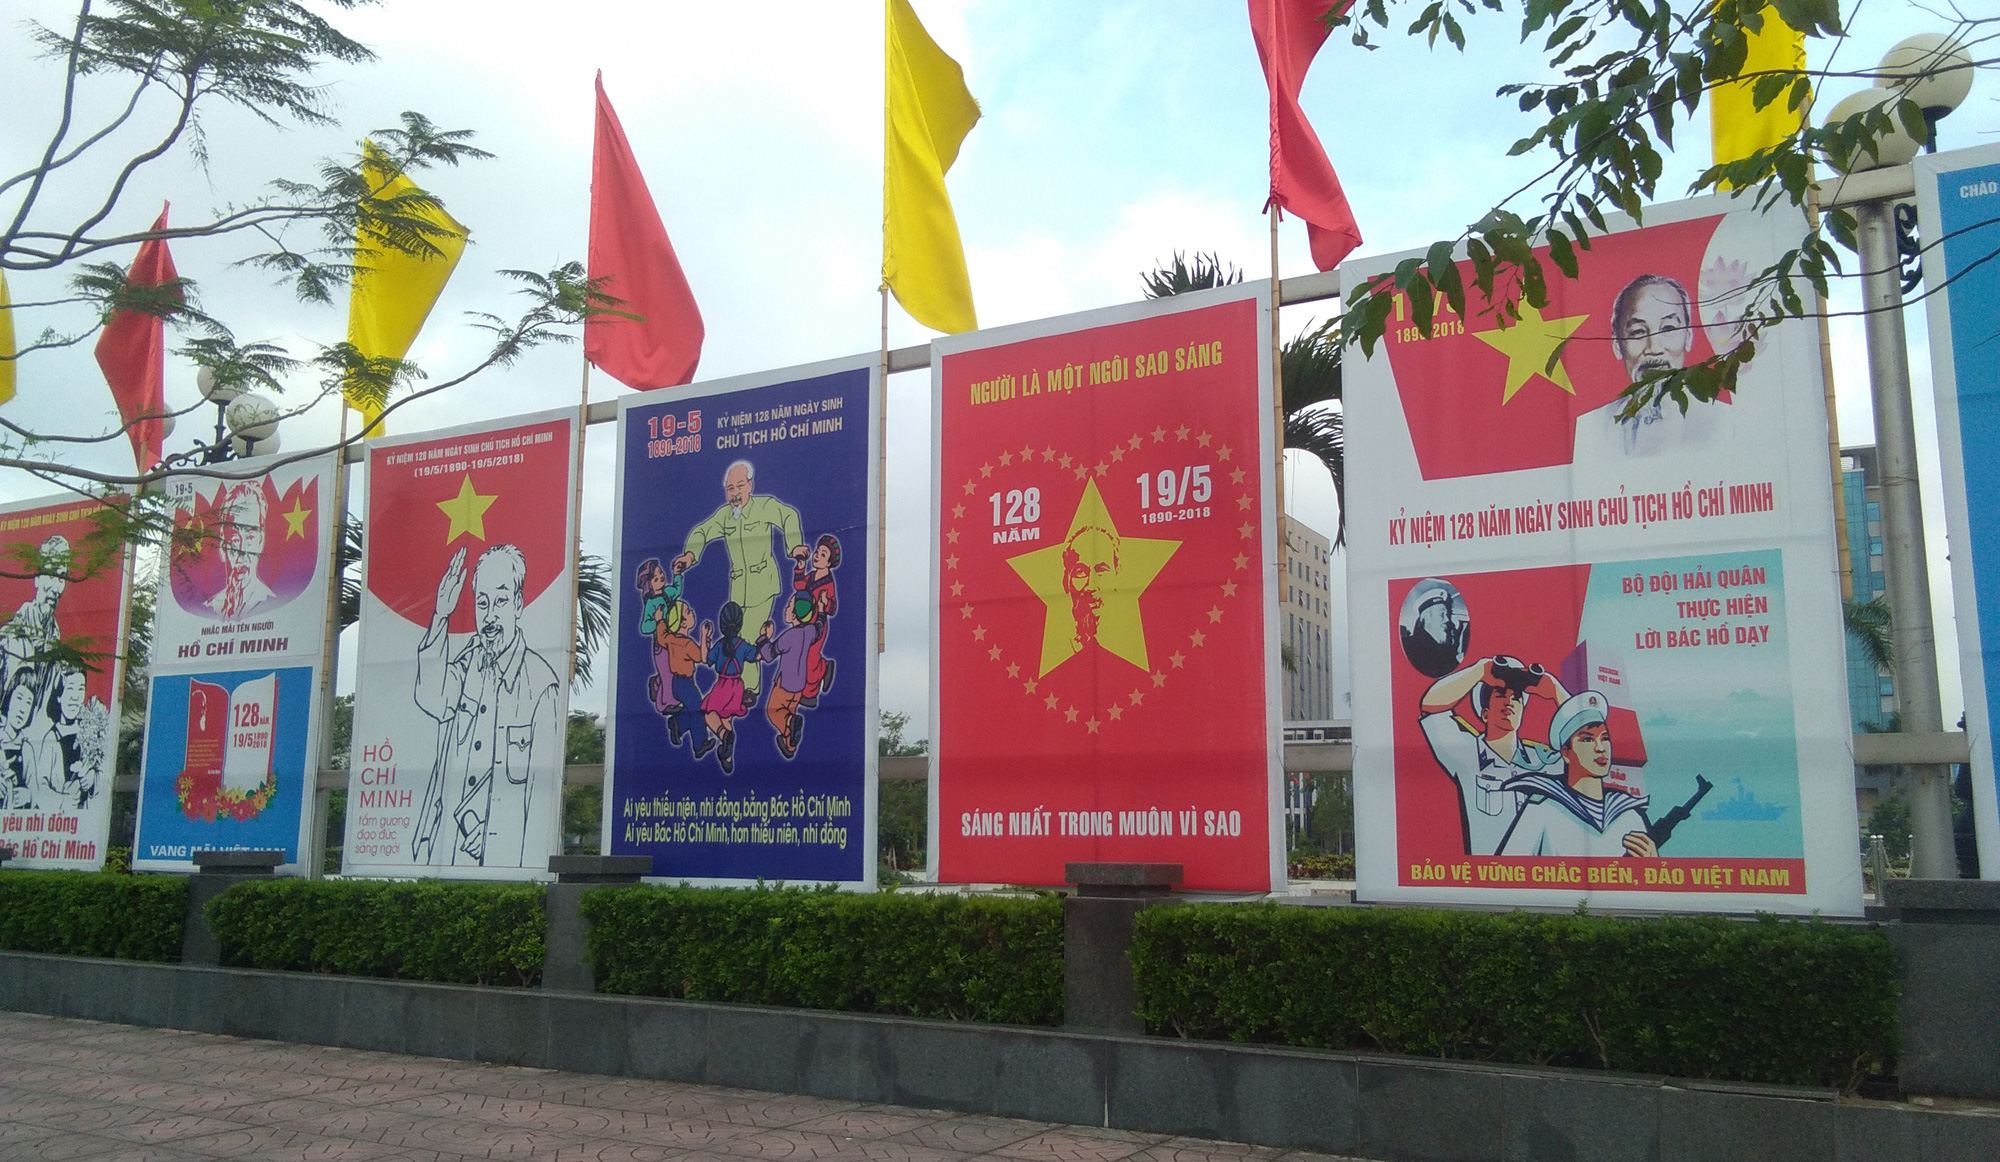 Bắc Giang: Hướng dẫn tuyên truyền kỷ niệm 130 năm Ngày sinh Chủ tịch Hồ Chí Minh - Ảnh 1.